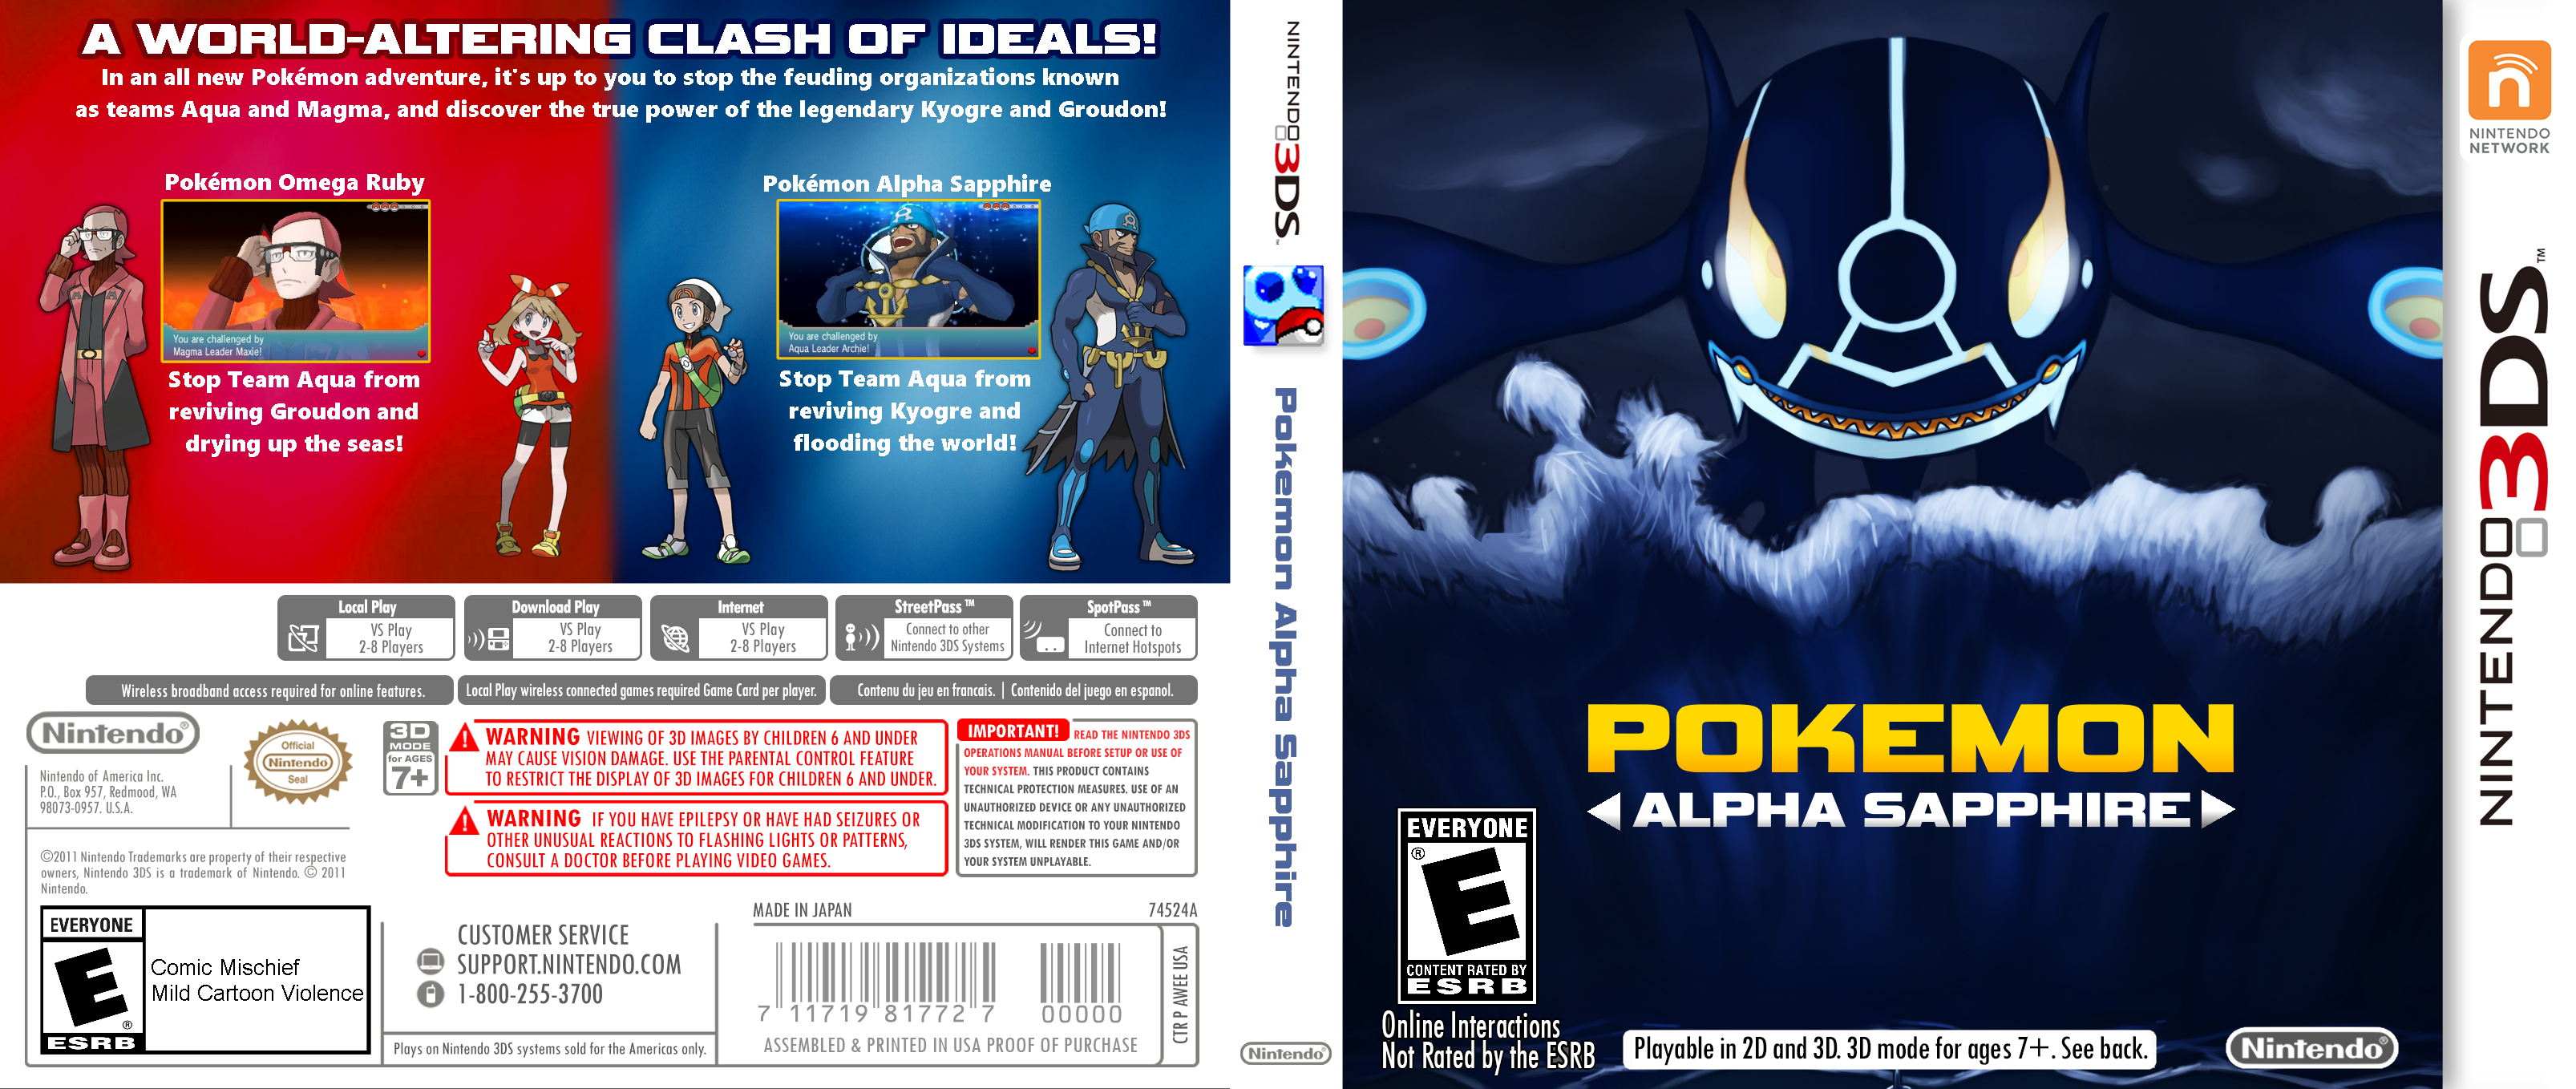 Pokemon Alpha Sapphire box cover